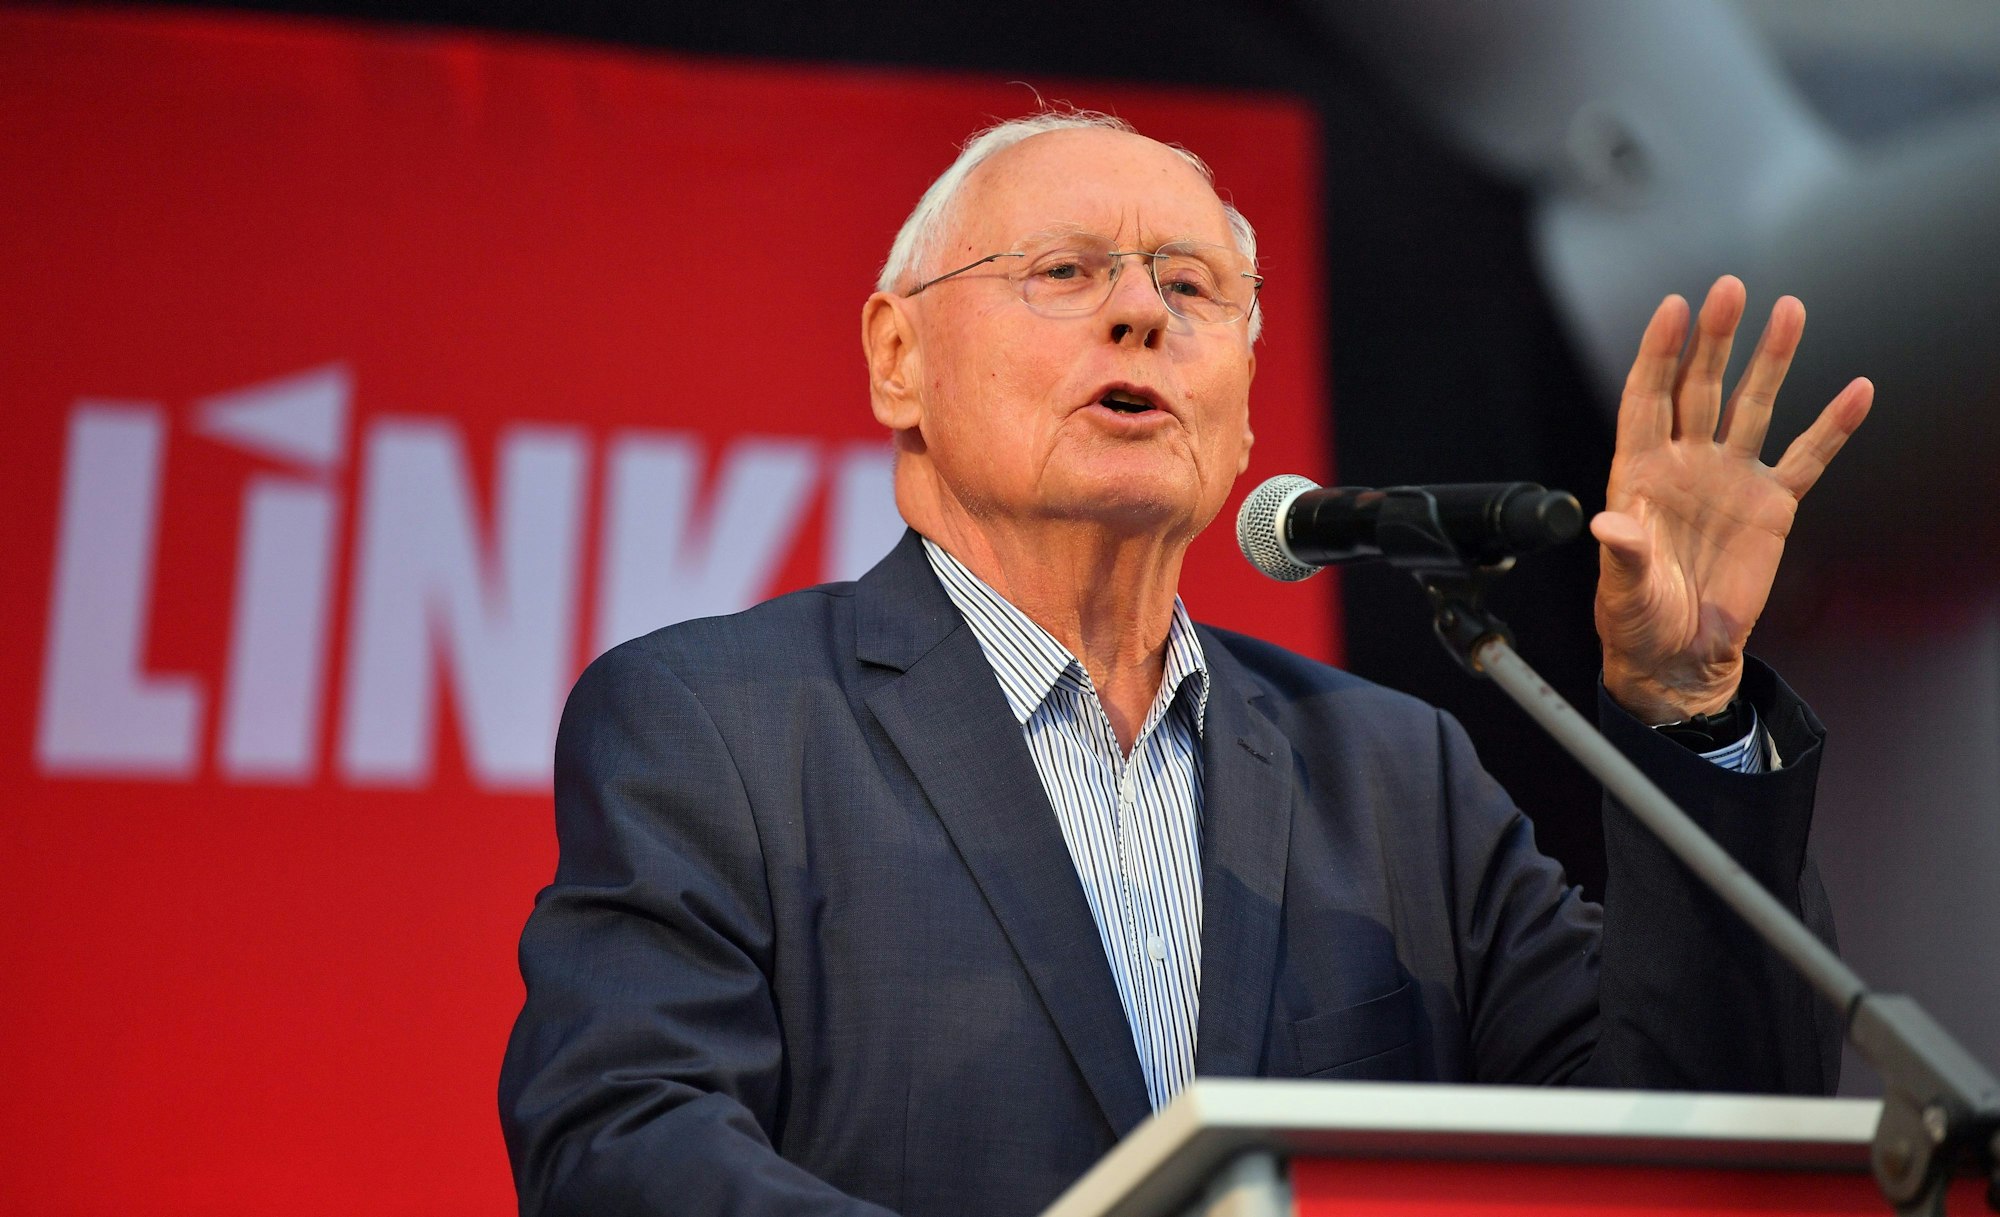 Oskar Lafontaine, saarländischer Fraktionsvorsitzender der Partei Die Linke, spricht bei einer Wahlkampfveranstaltung der Thüringer Linken am 25.08.2021.